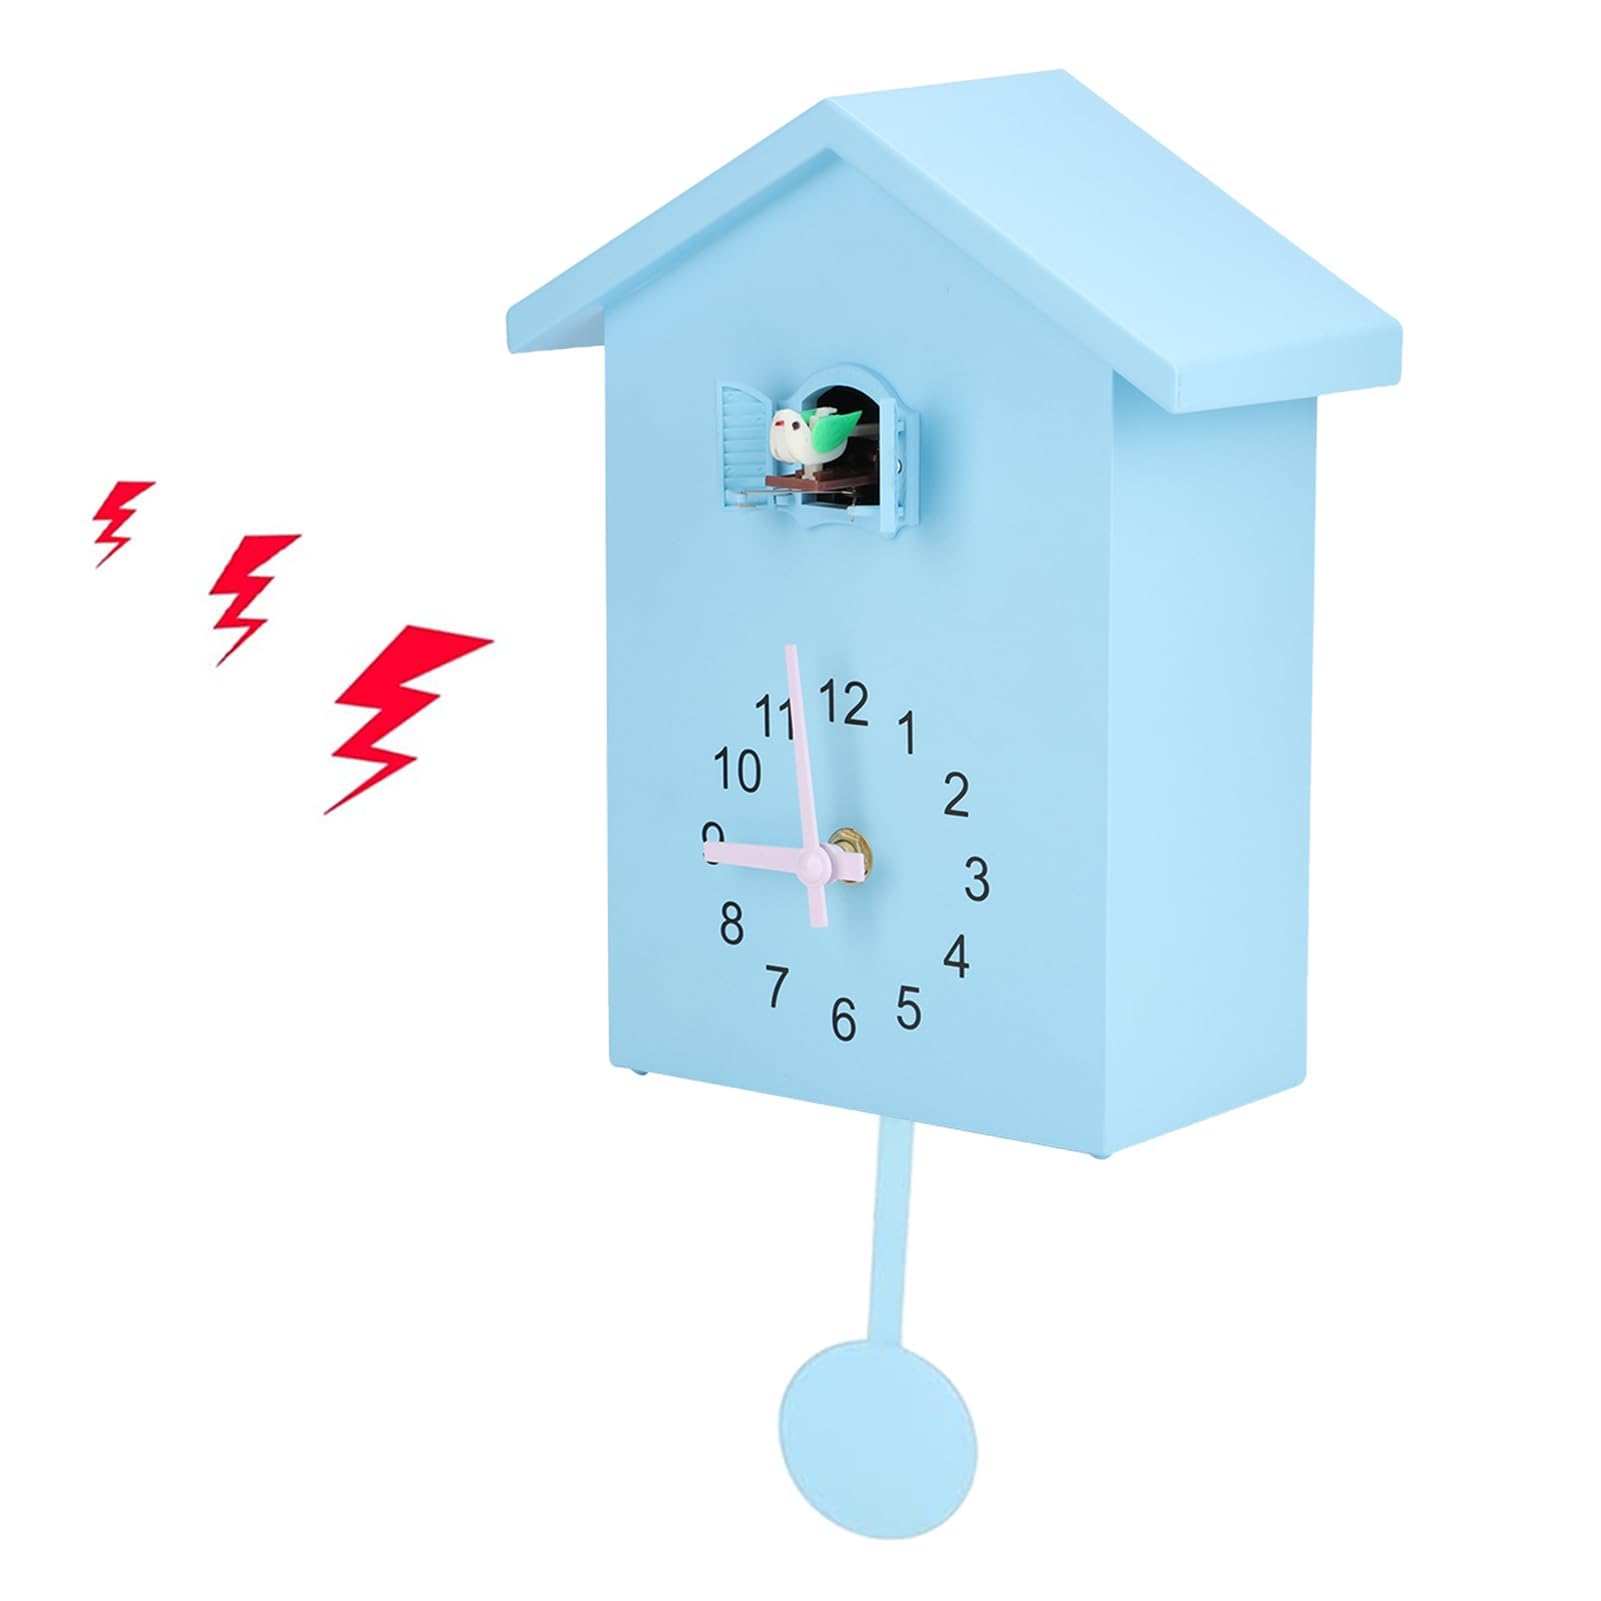 HERCHR Moderne Kuckucksuhr, Birdhouse blau Wanduhr Kuckucksuhr aus dem Fenster, Kleiner Vogelstunden Uhr für Zuhause Wohnzimmer Küche Büro Dekor